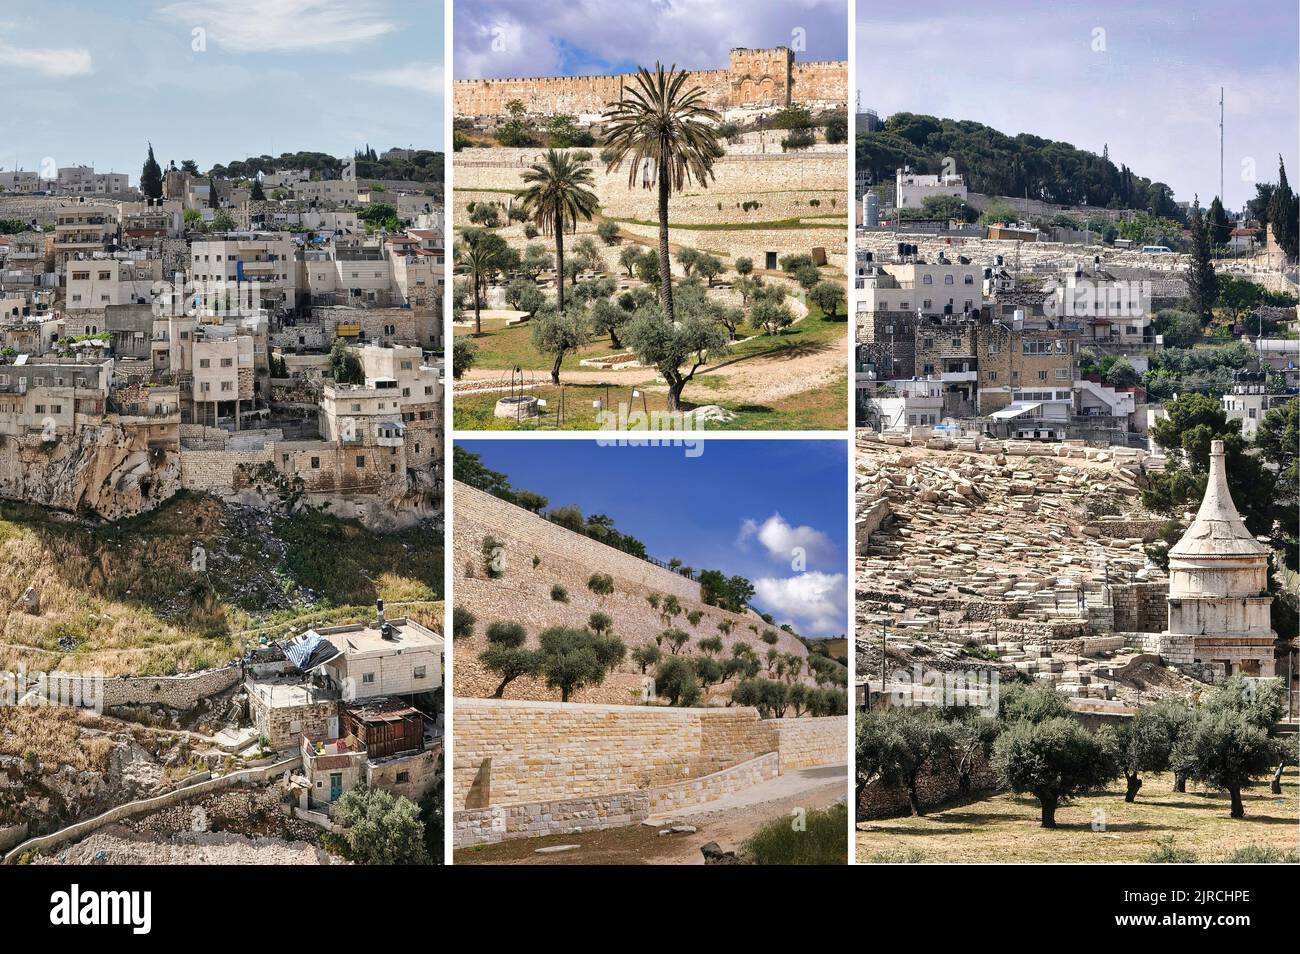 El Valle de Kidron, un lugar de olivares, tumbas antiguas y monumentos funerarios mal nombrados, divide el Monte del Templo de Jerusalén del Monte de los Olivos. Foto de stock